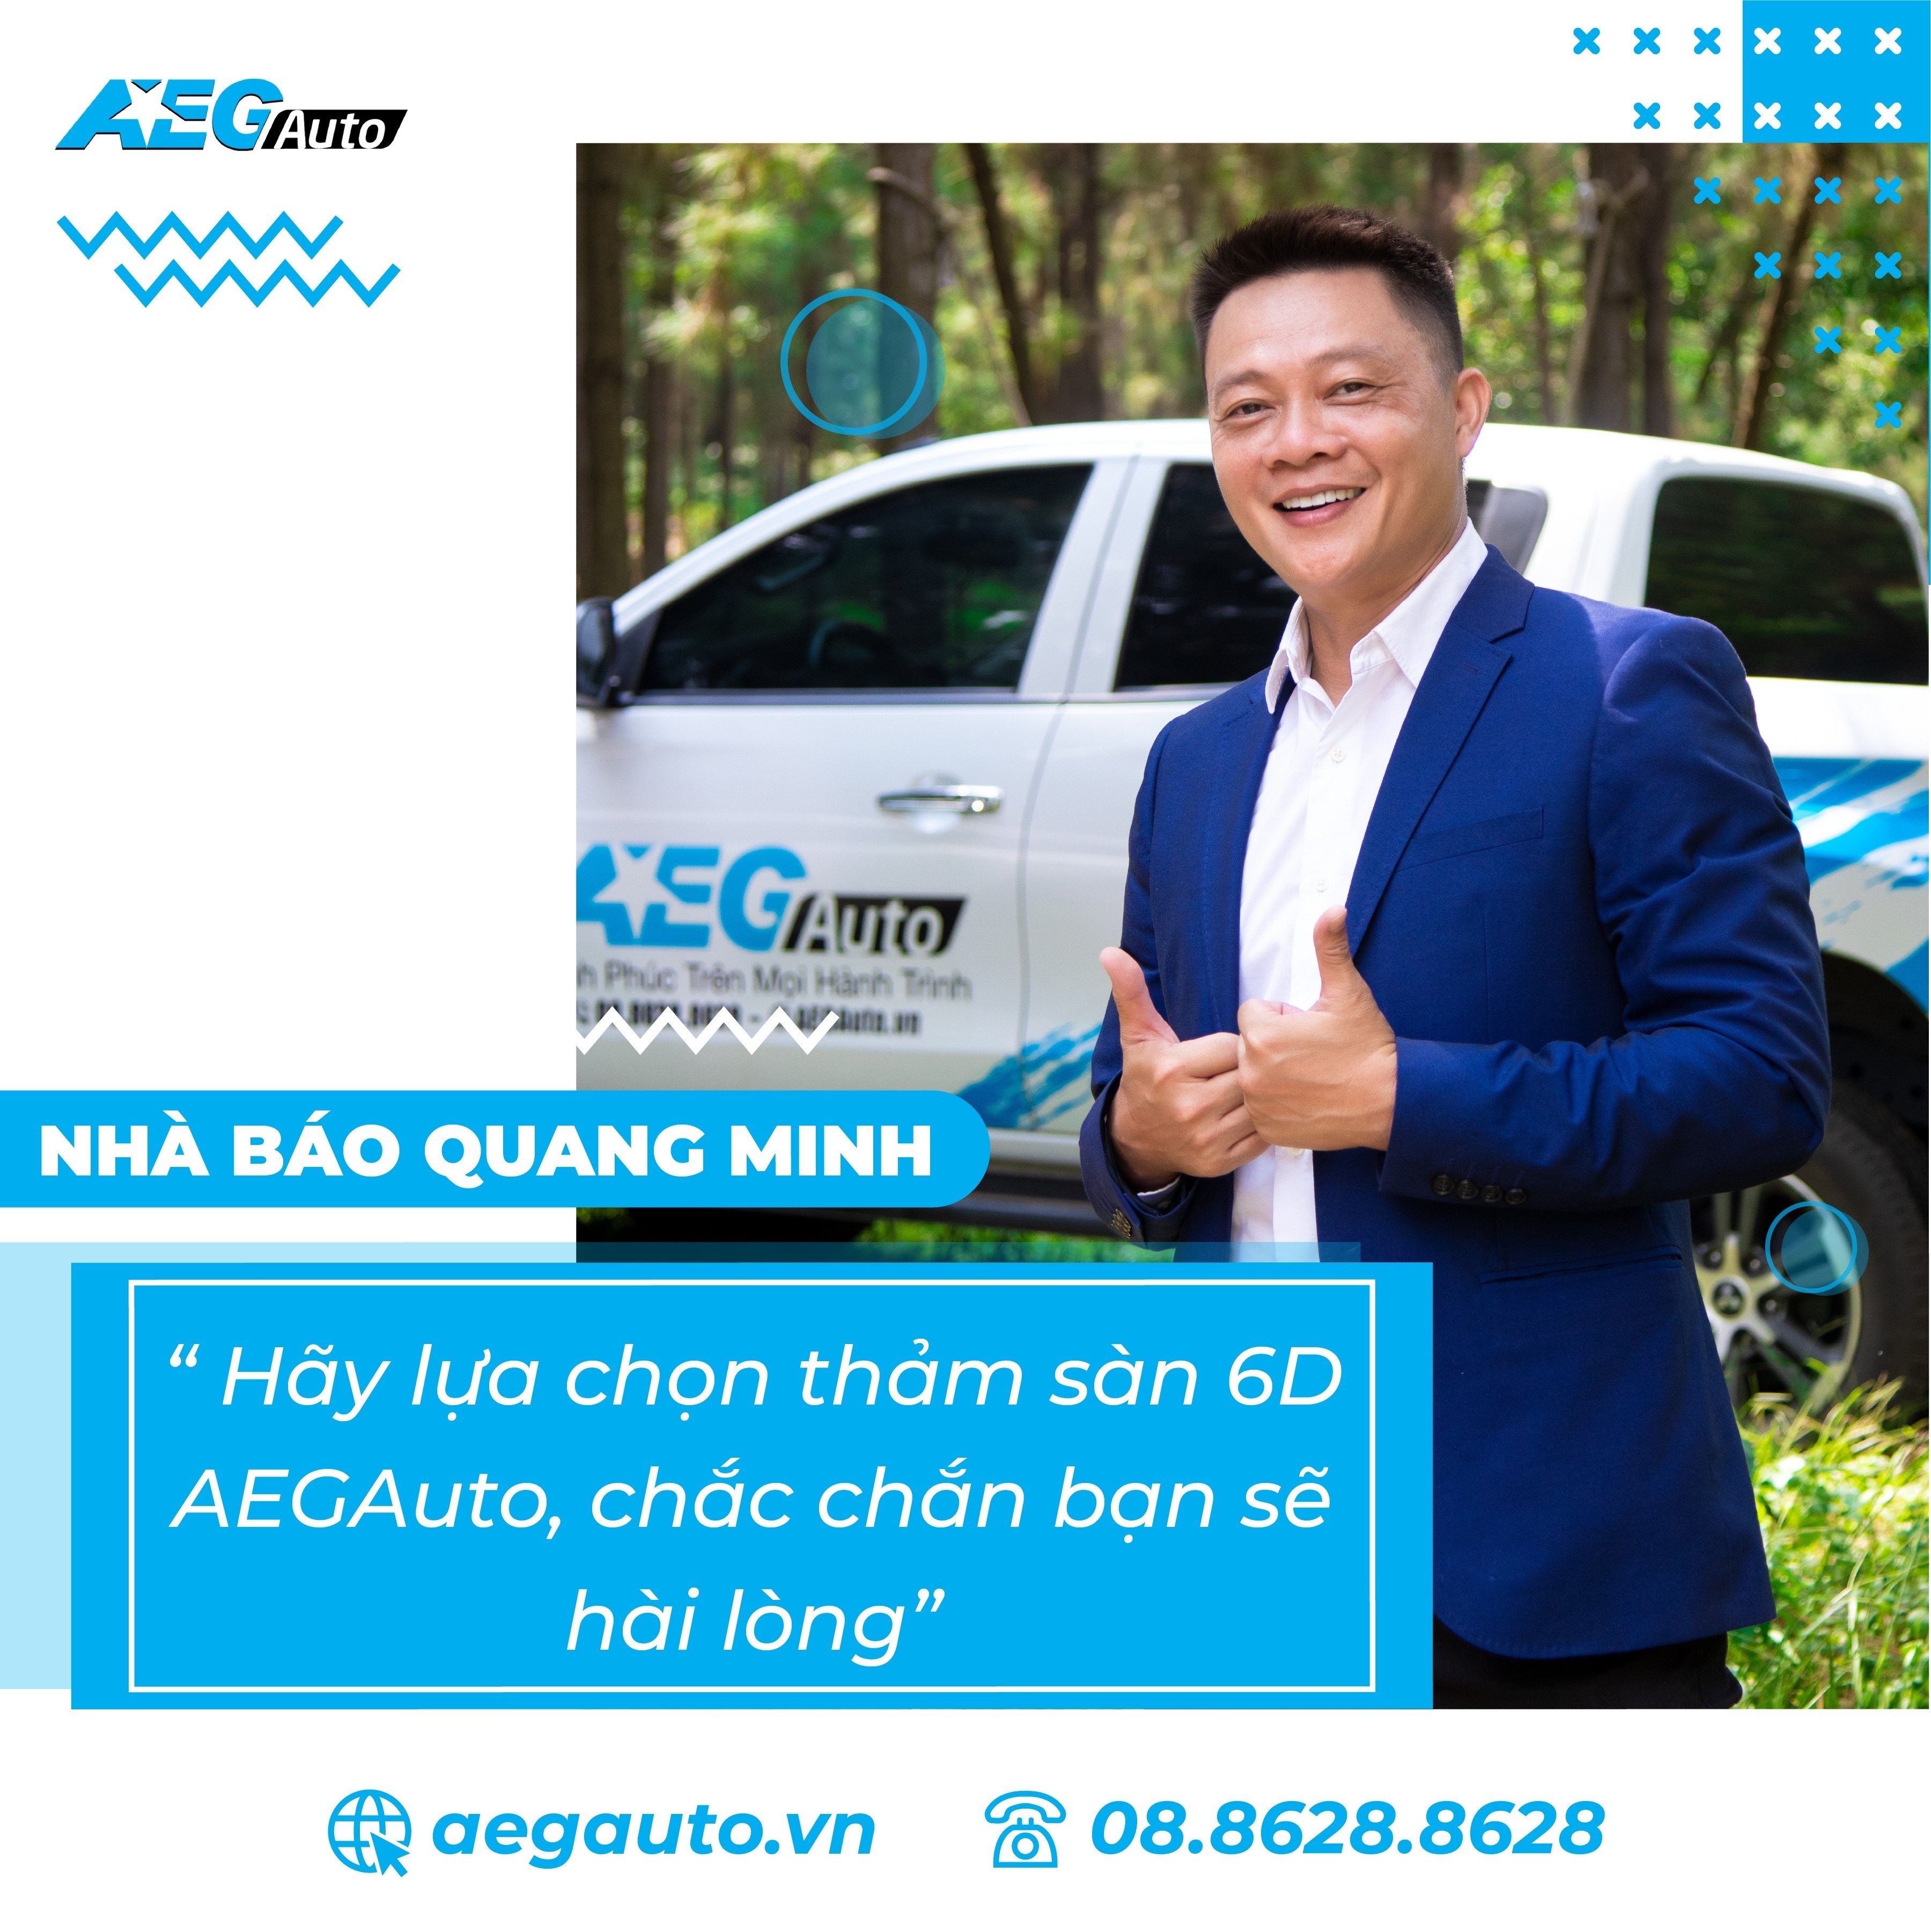 Nhà Báo Quang Minh tin chọn thảm sàn ô tô AEGAuto